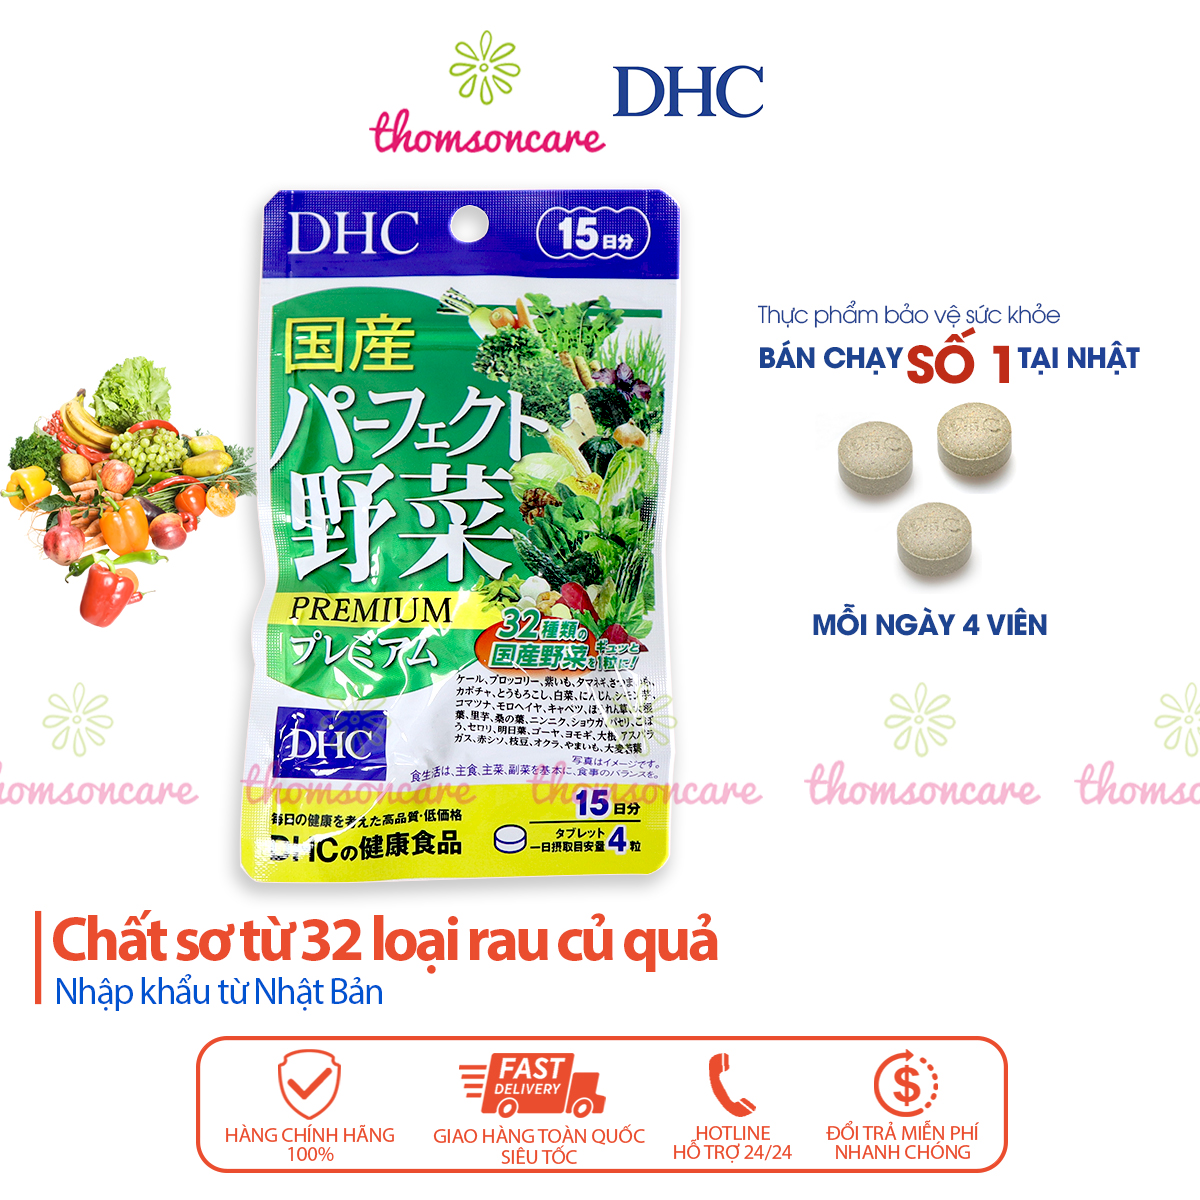 Viên uống Rau củ DHC - Bổ sung chất xơ từ 32 loại rau củ, cung cấp dưỡng chất cần thiết cho cơ thể - Hàng Chính Hãng DHC